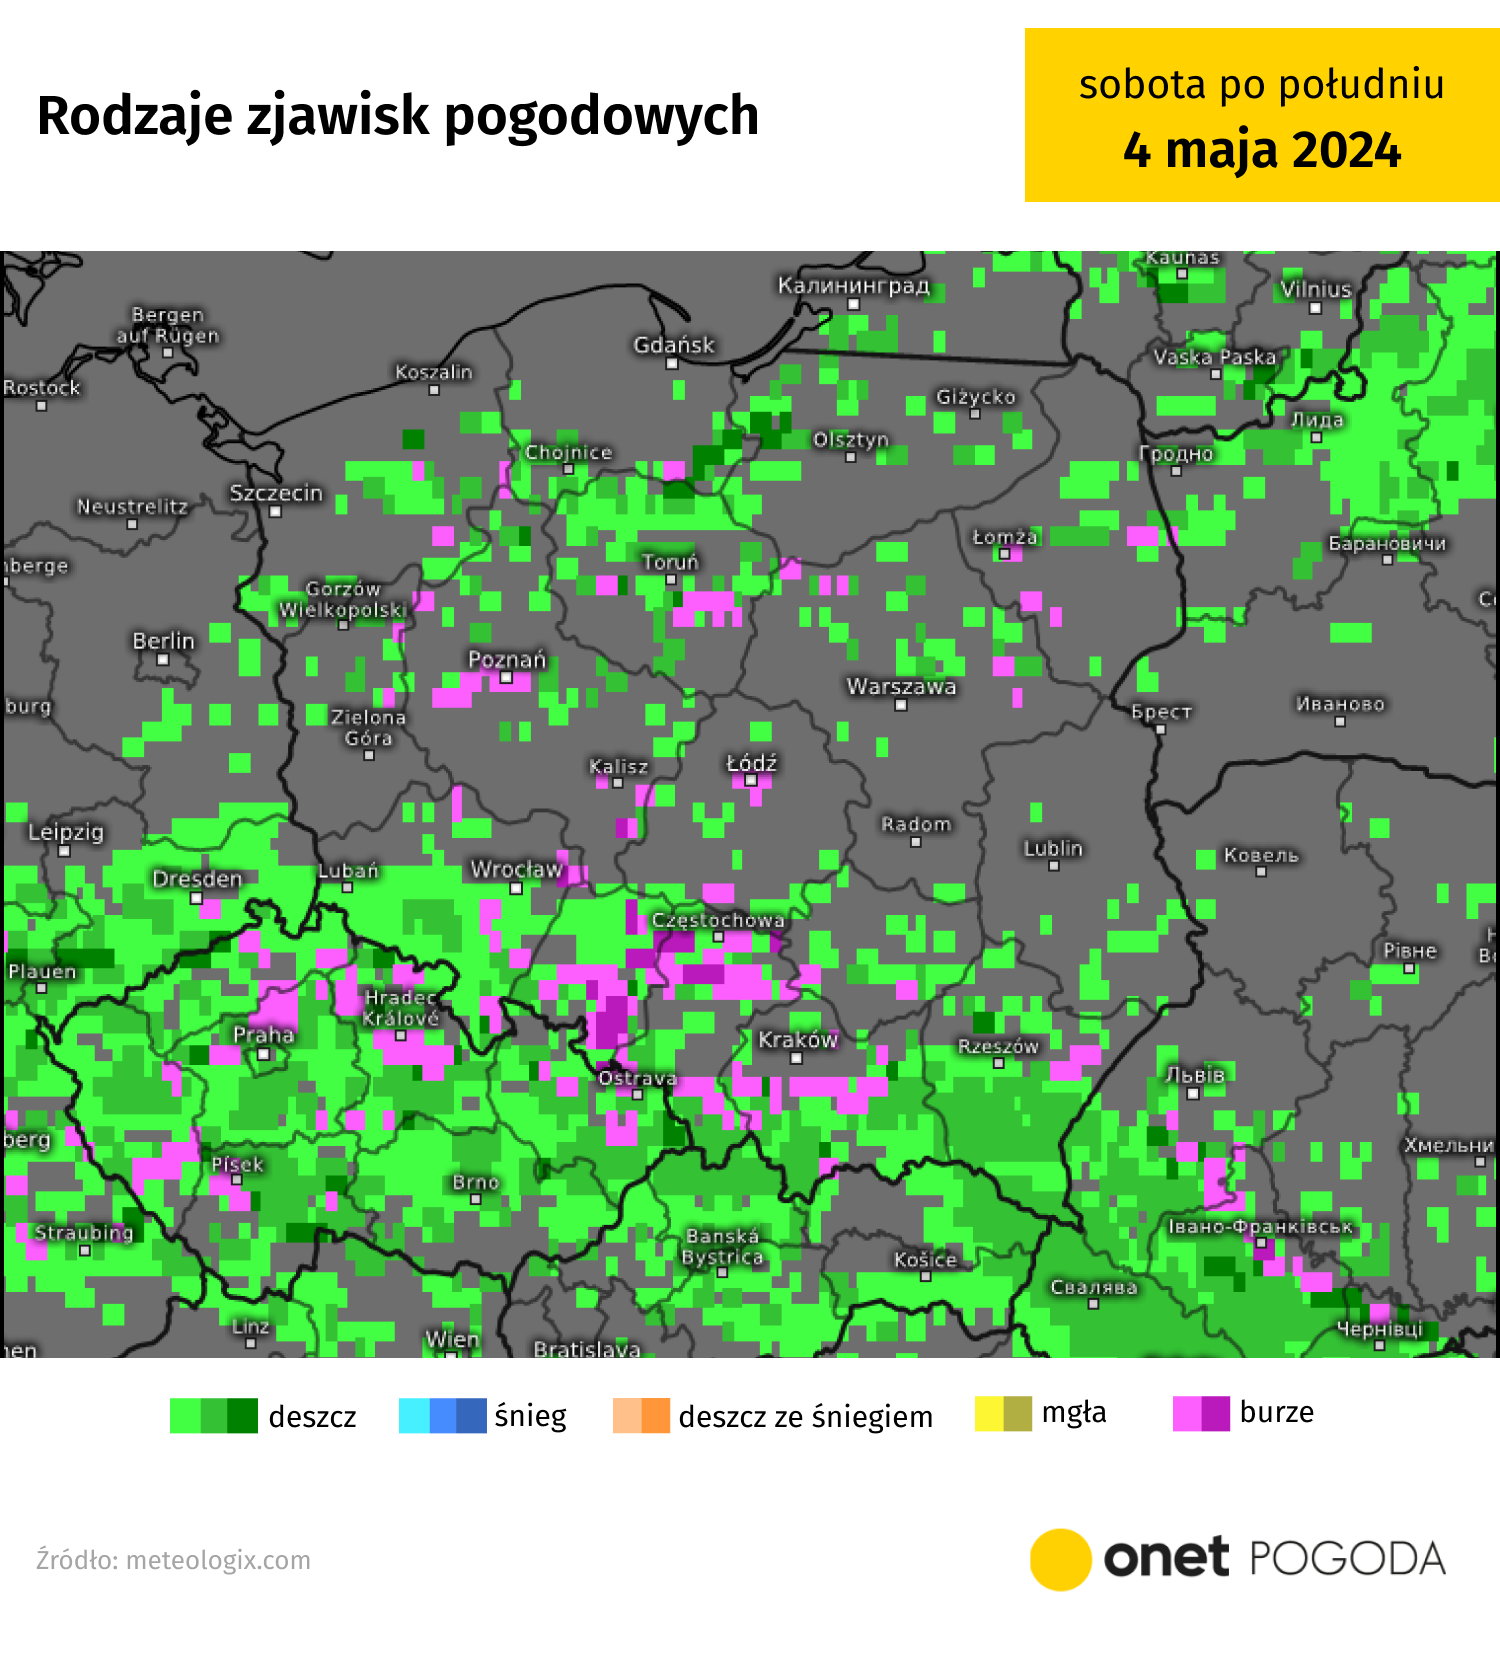 potężny antycyklon zawładnie polską. nadchodzi słoneczne i gorące lato [mapy]